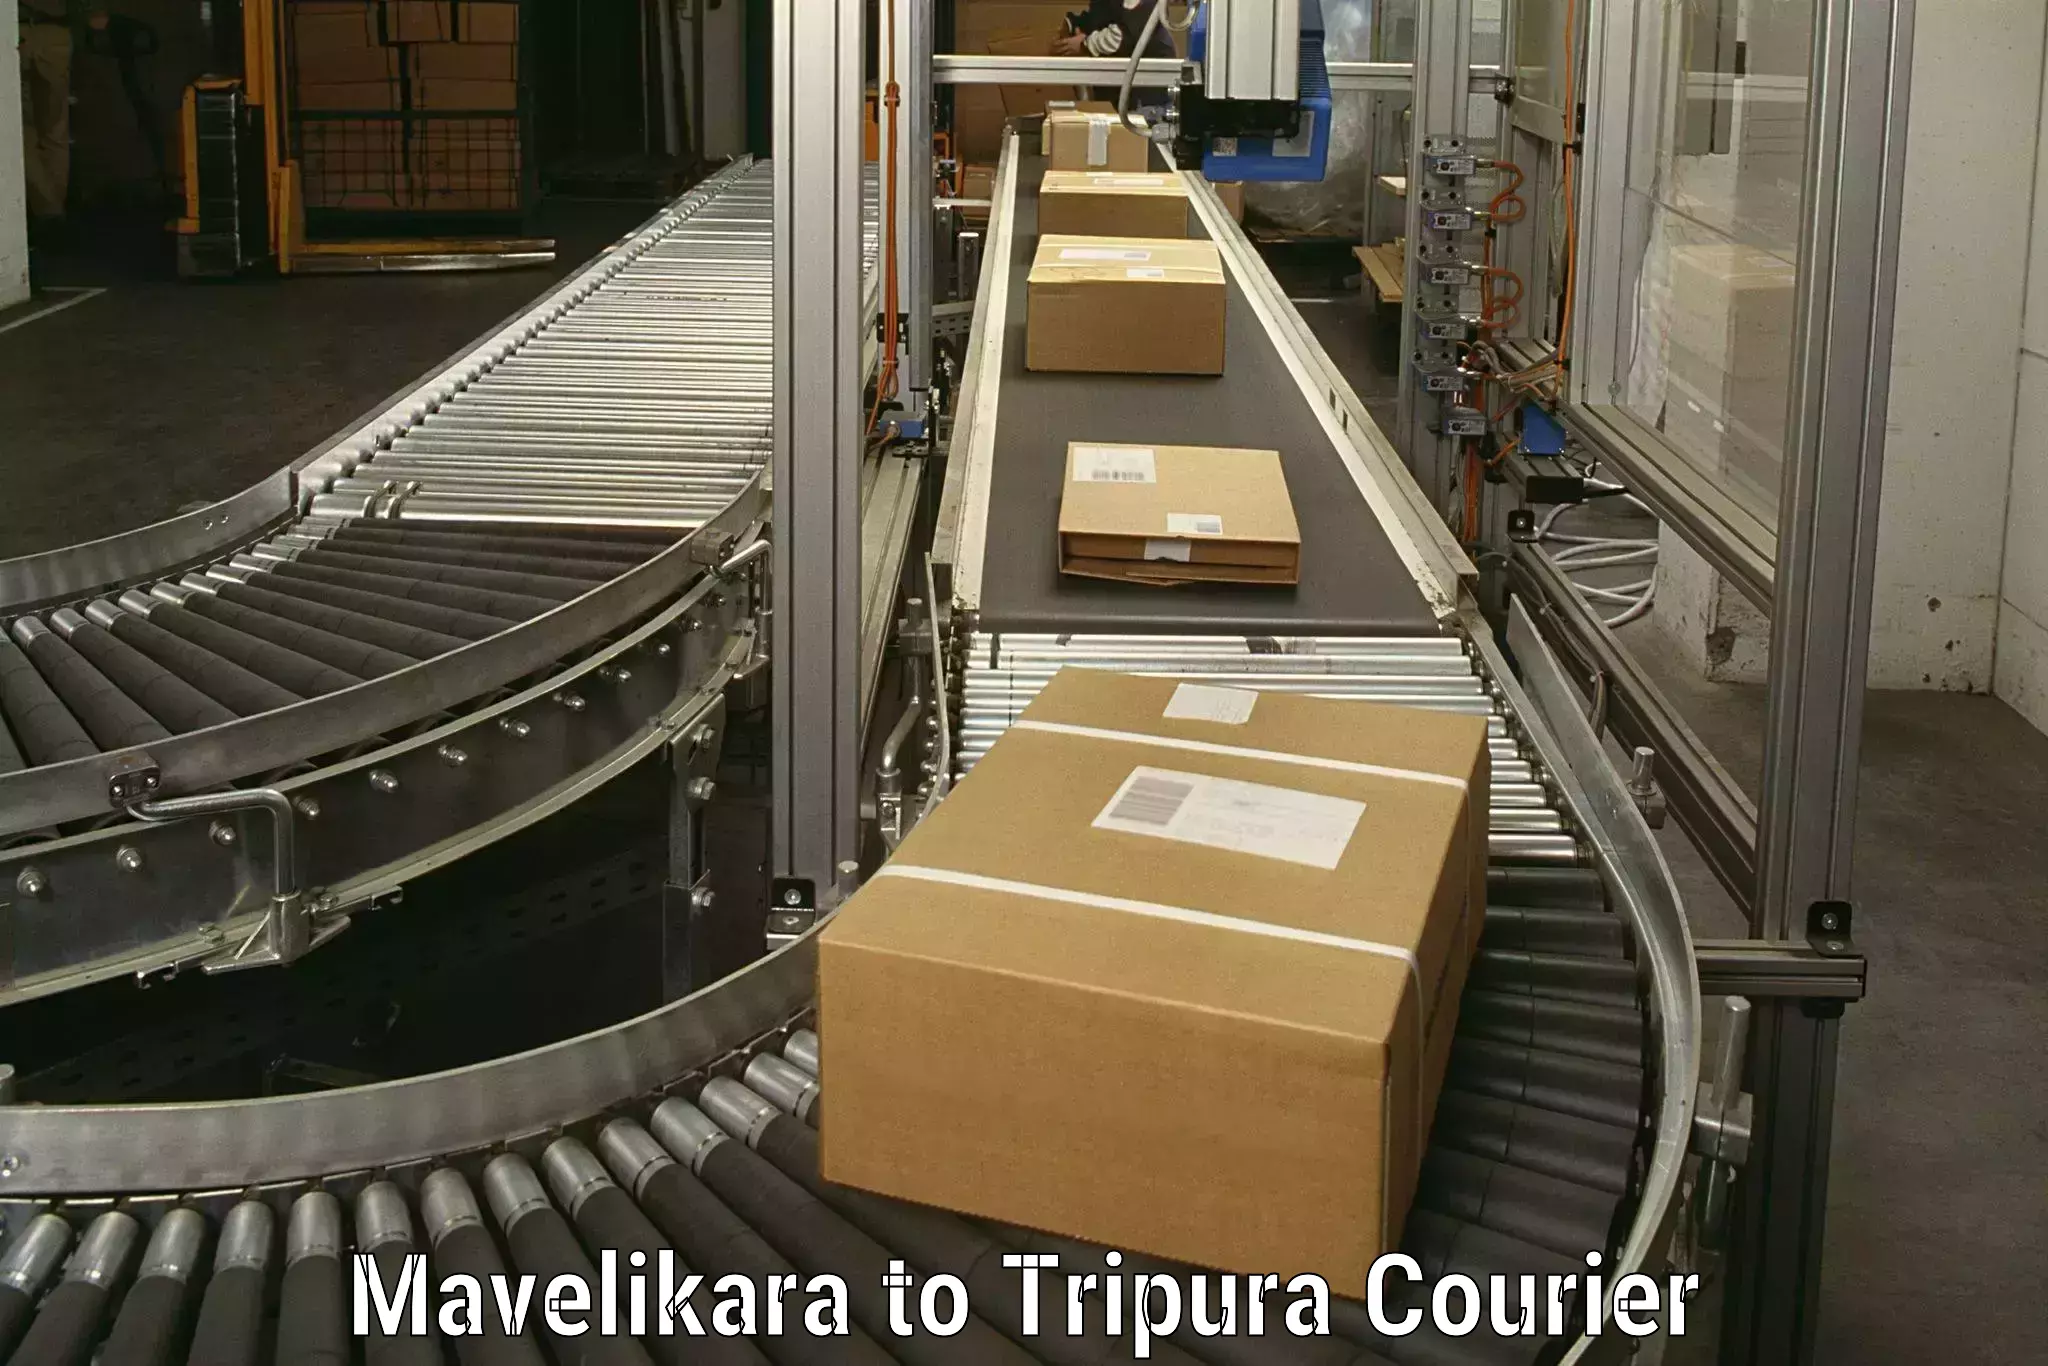 Trusted furniture movers Mavelikara to Udaipur Tripura